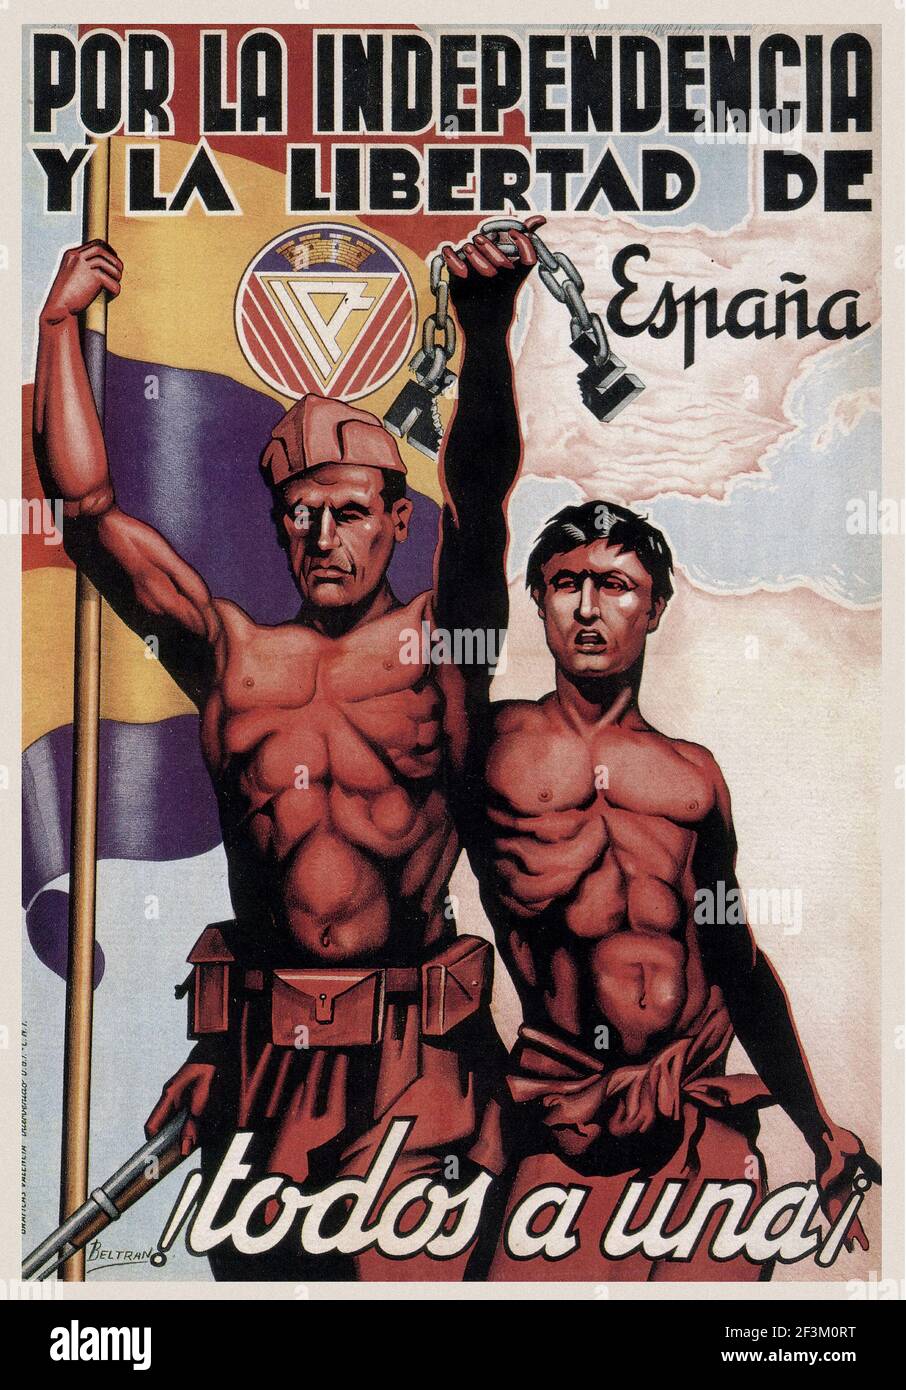 Affiche de propagande espagnole de la guerre de Sécession. Pour l'indépendance et la liberté de l'Espagne, 1937 Banque D'Images